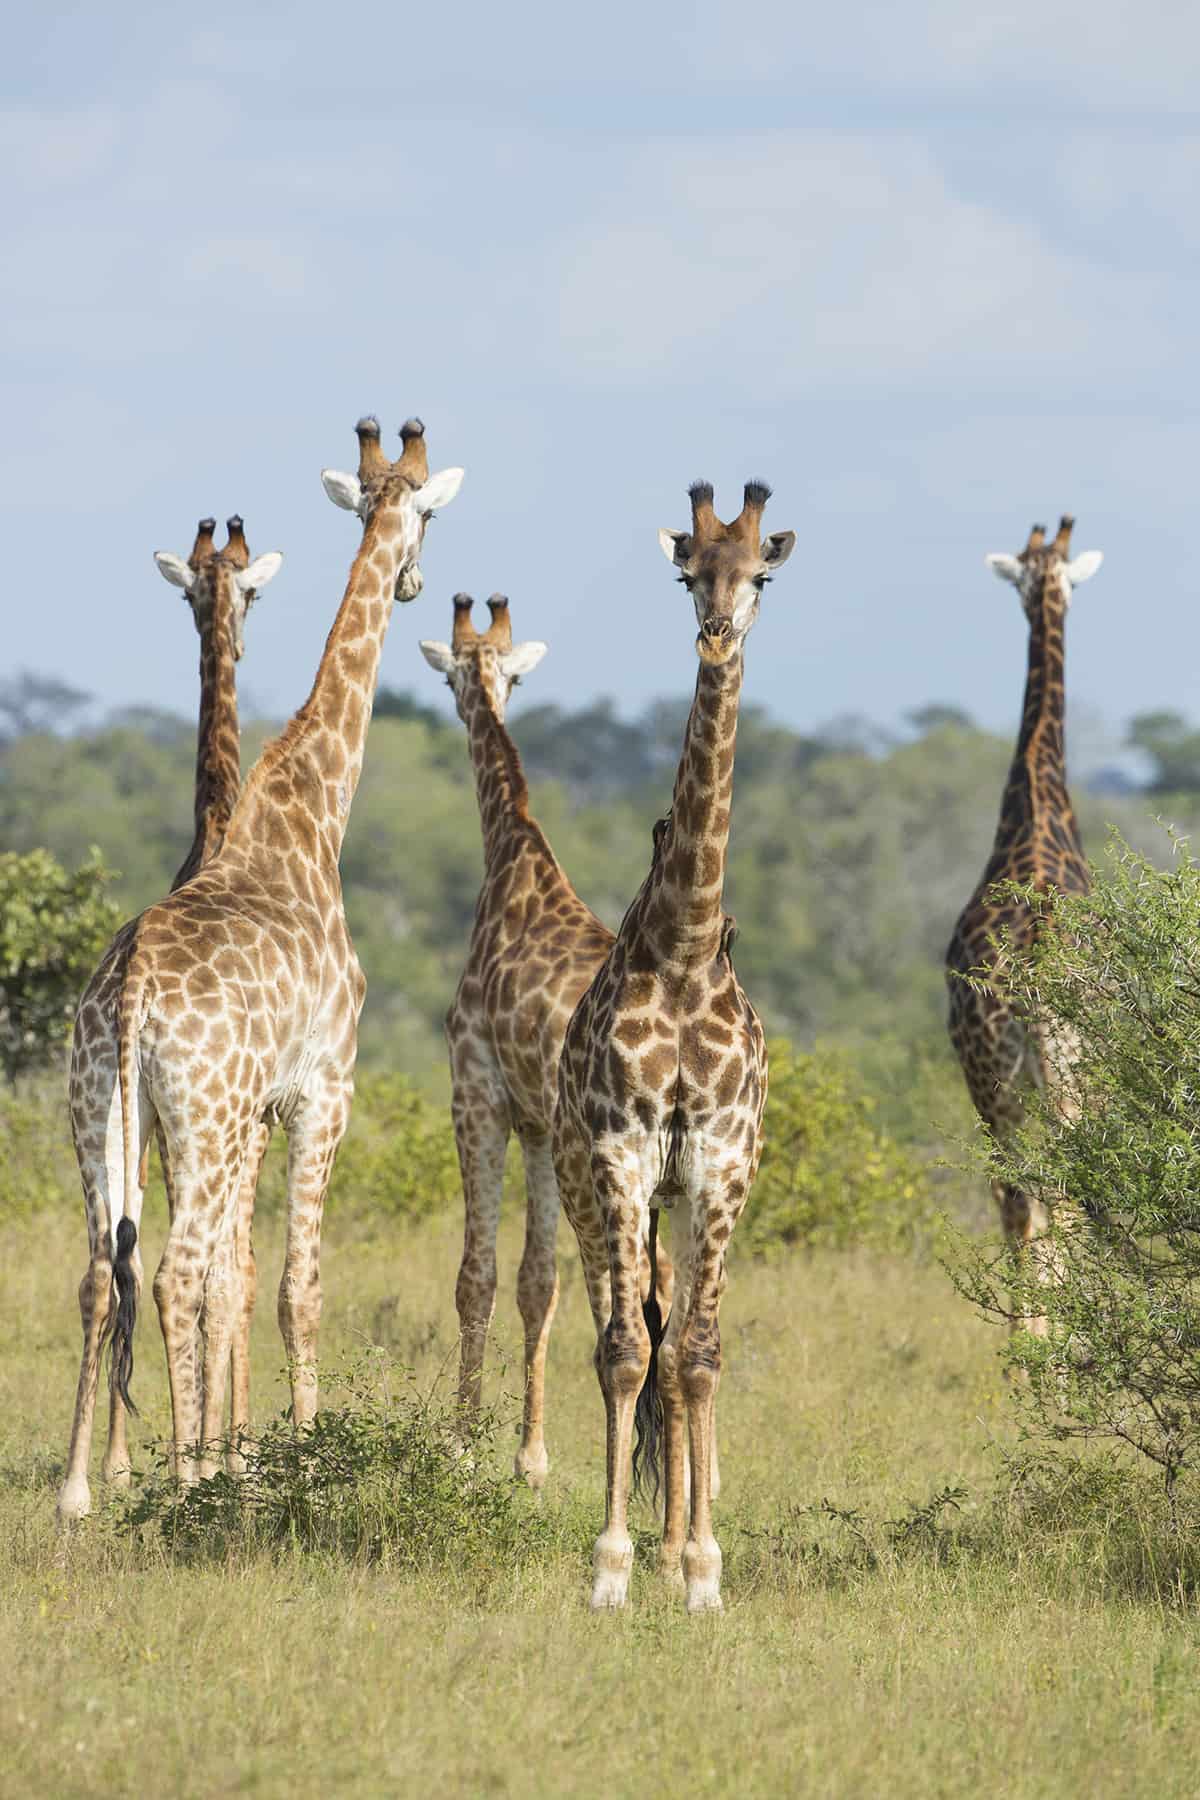 5 Giraffes